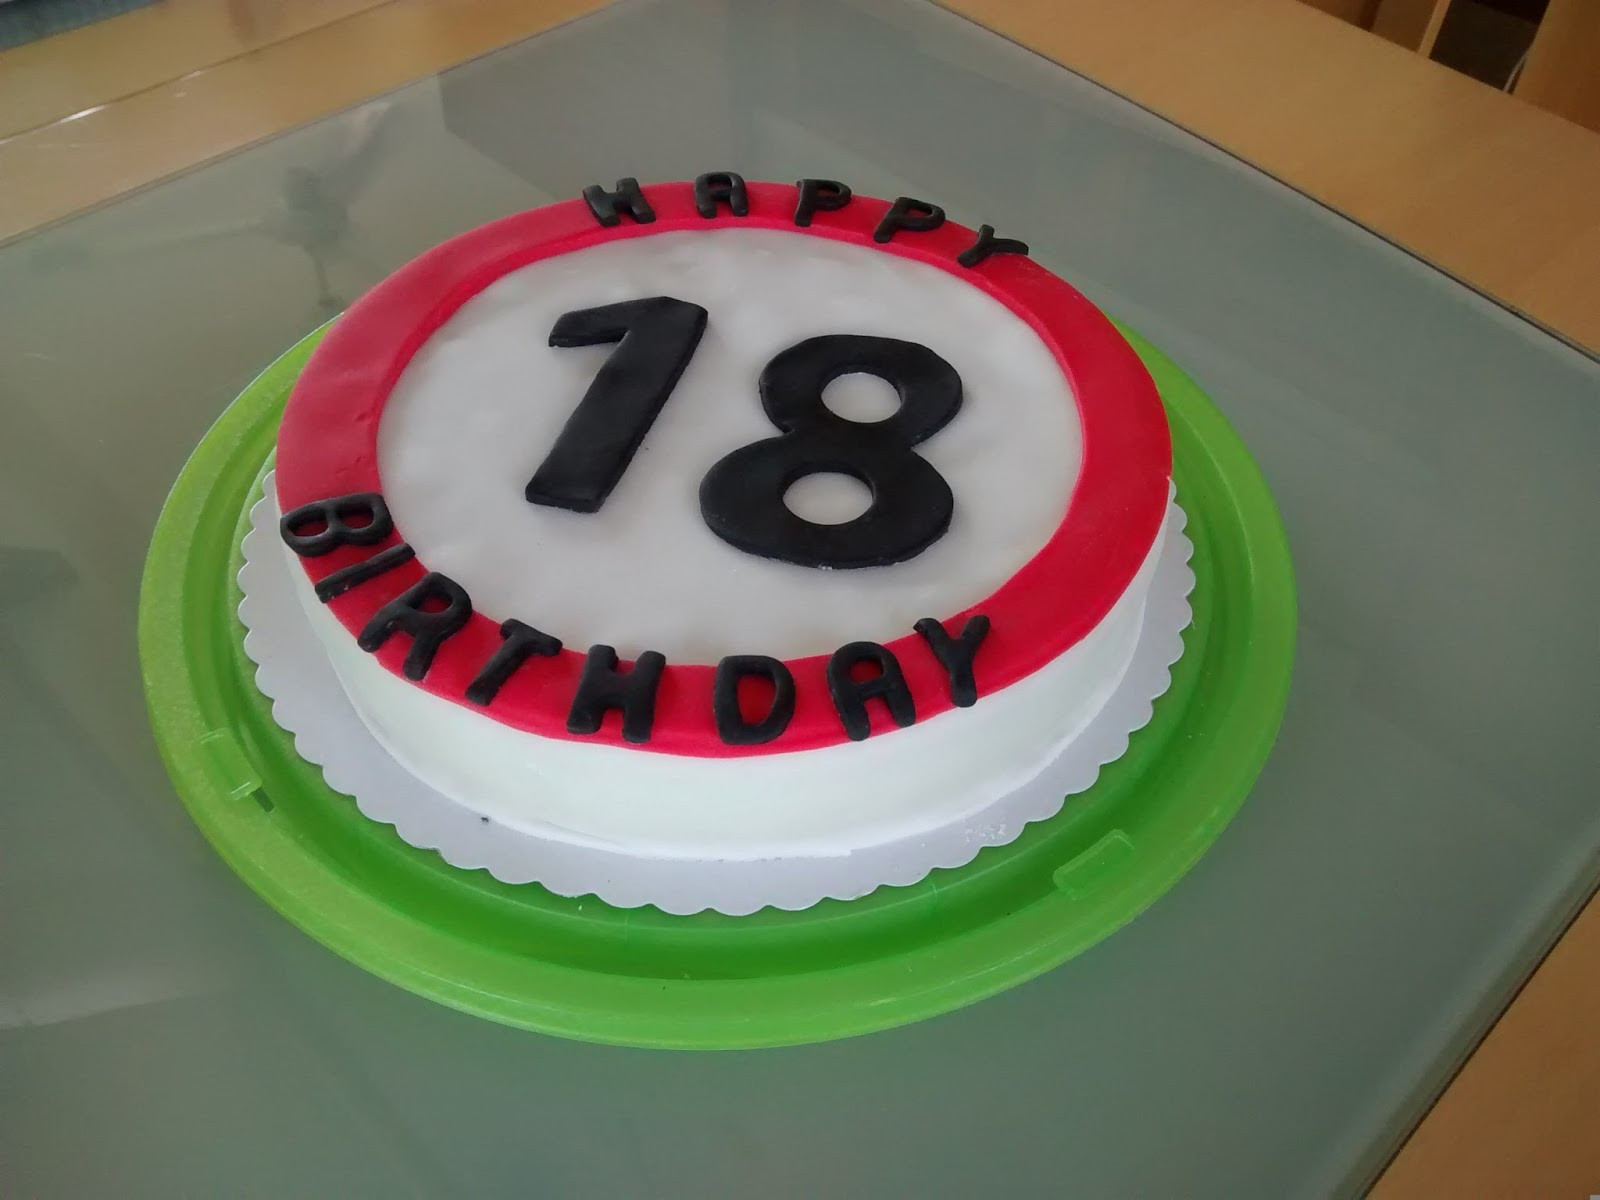 Geburtstagsgeschenk Zum 18
 Twink e Baking Torte zum 18 Geburtstag